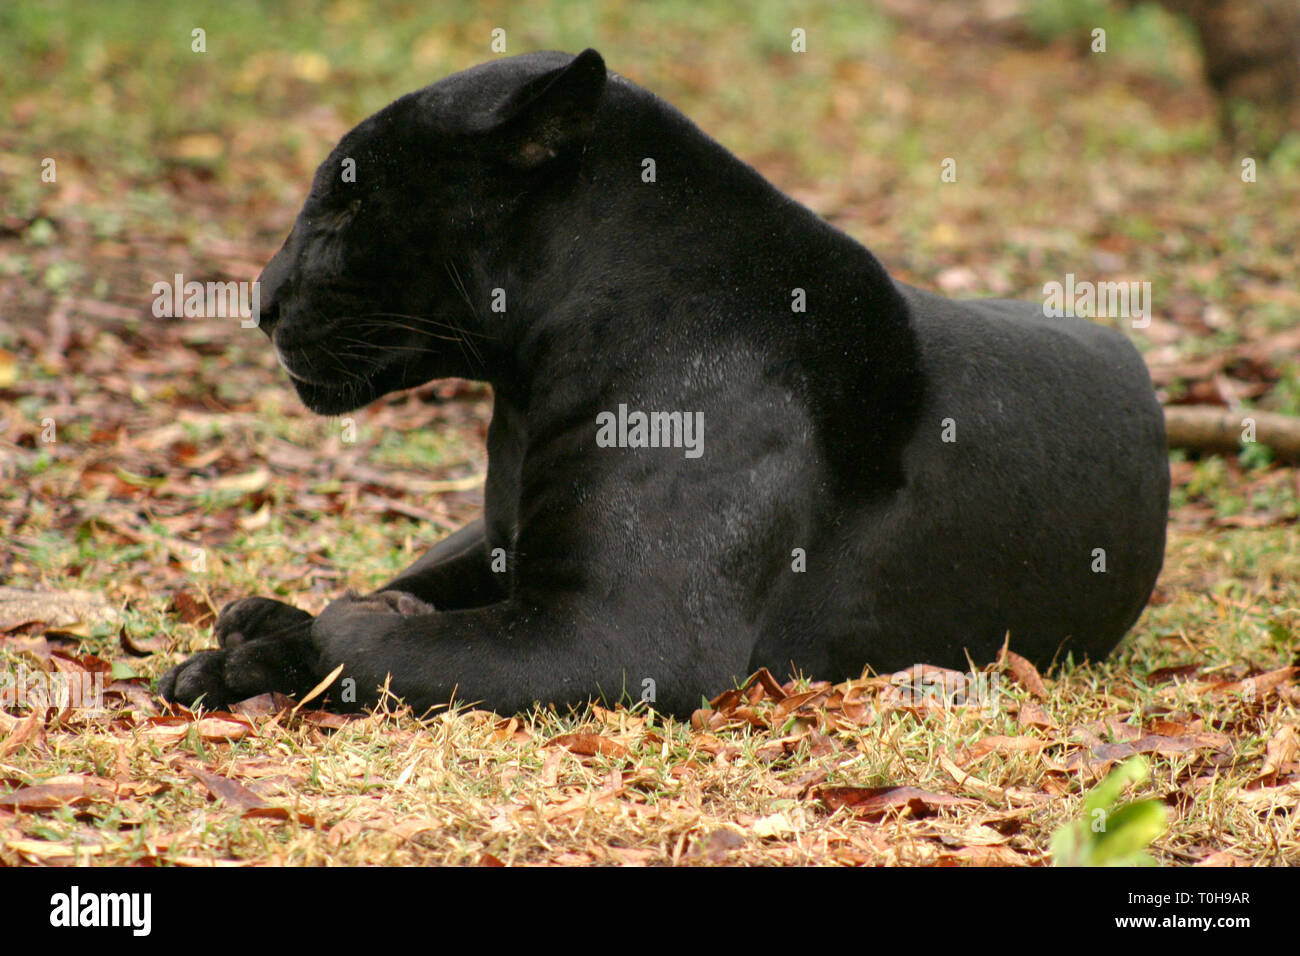 Pantera negra hi-res stock photography and images - Alamy